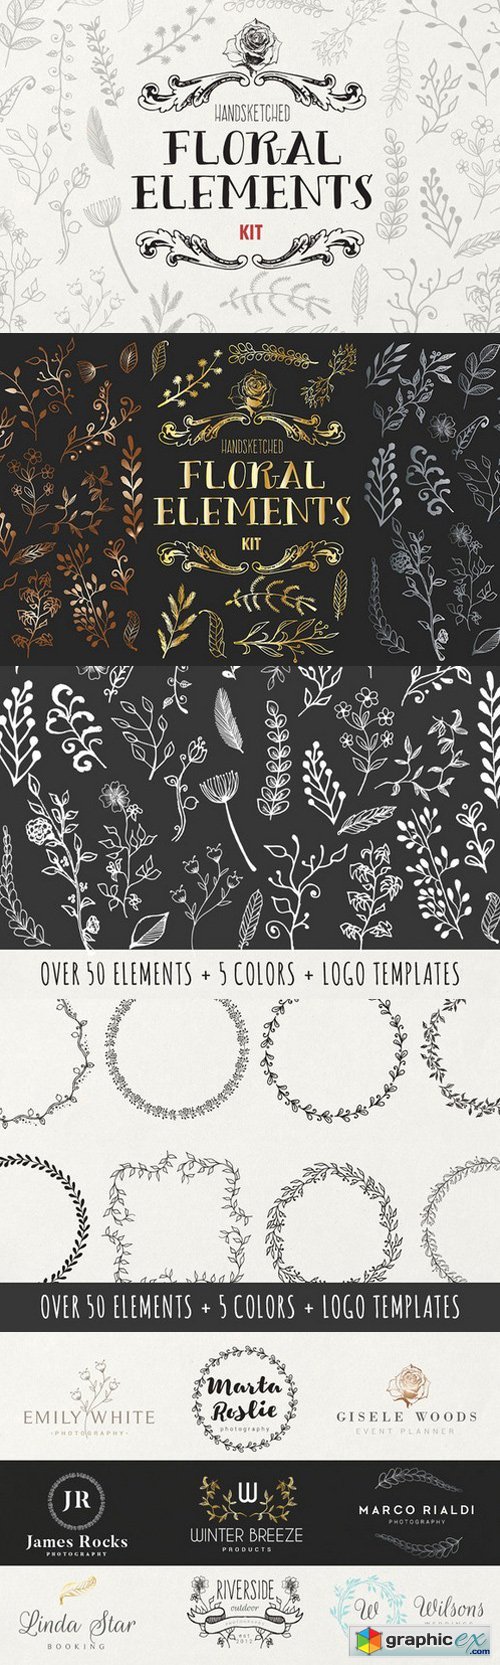 Handsketched Floral Elements Kit 670723